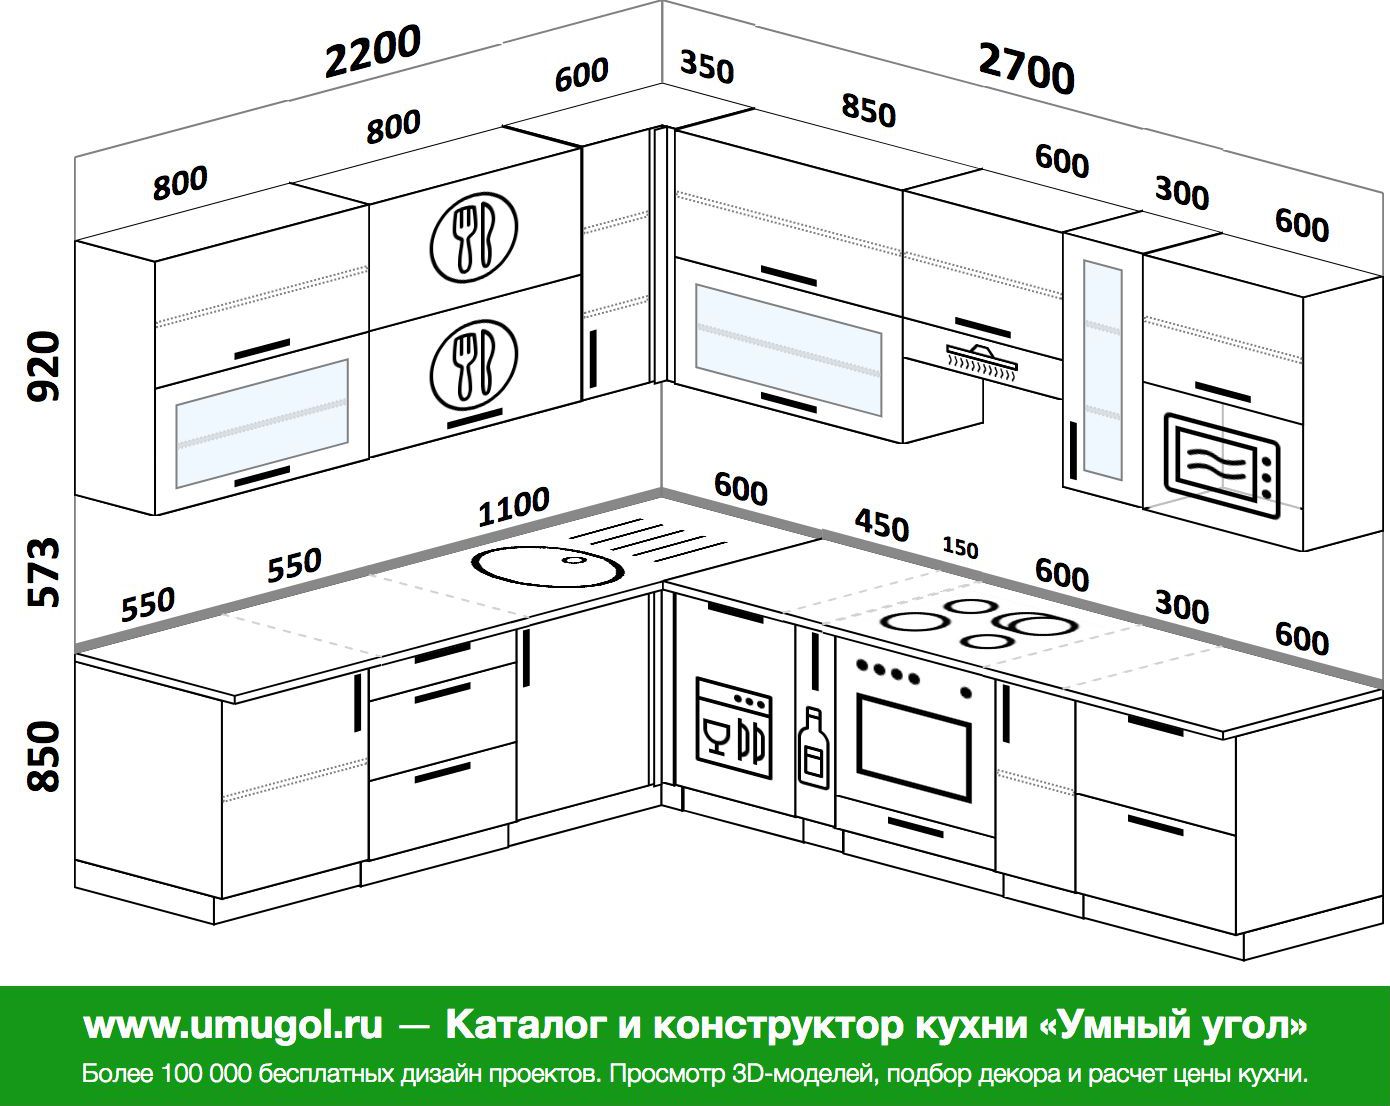 расстояние от нижних шкафов кухни до верхних